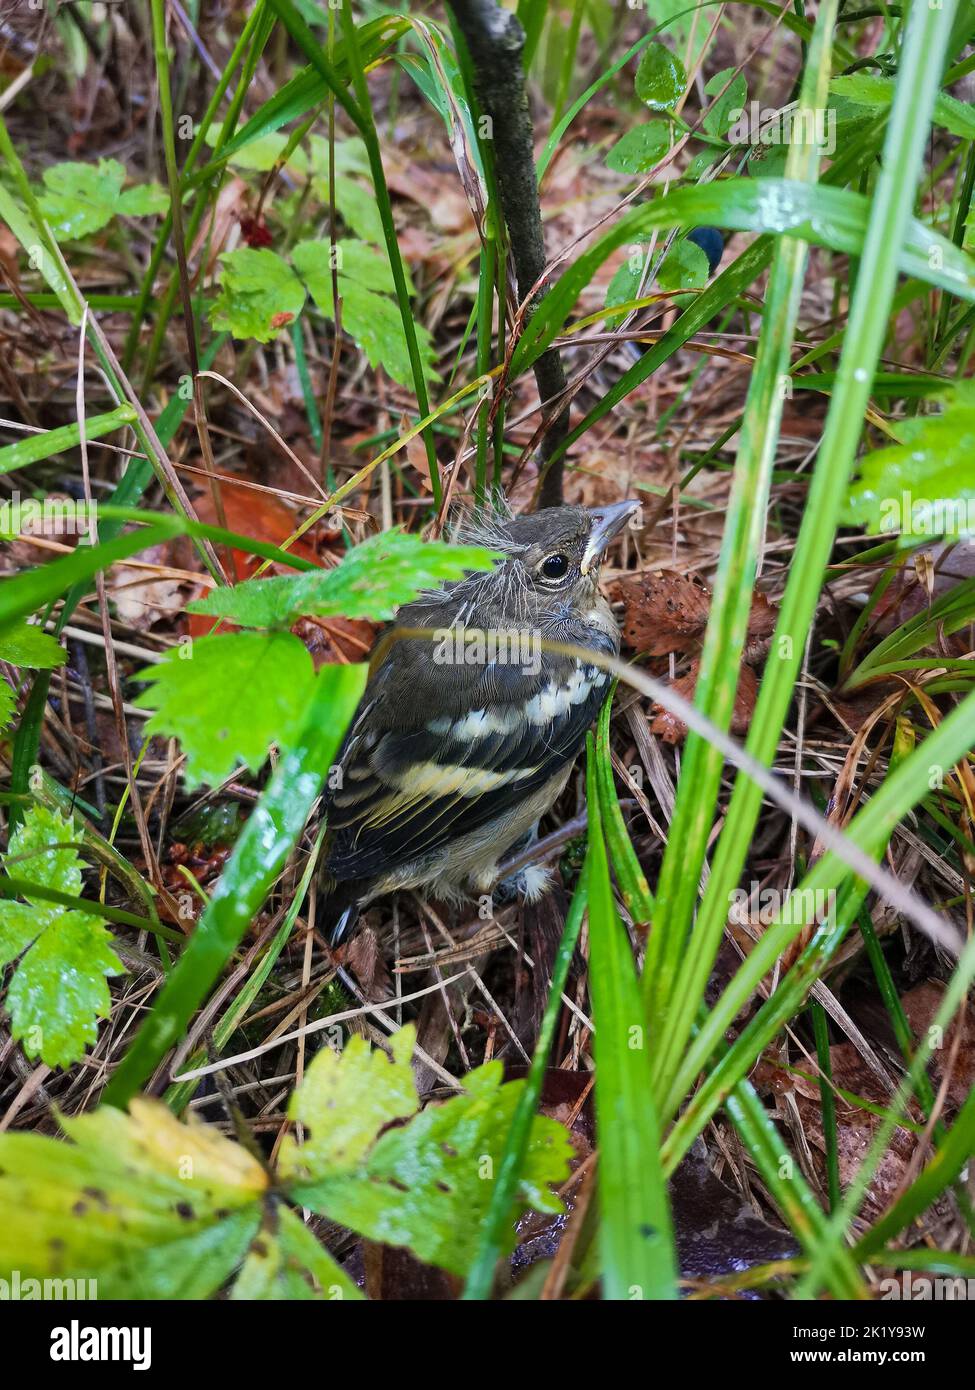 Little bird in wet grass Wildlife background Stock Photo